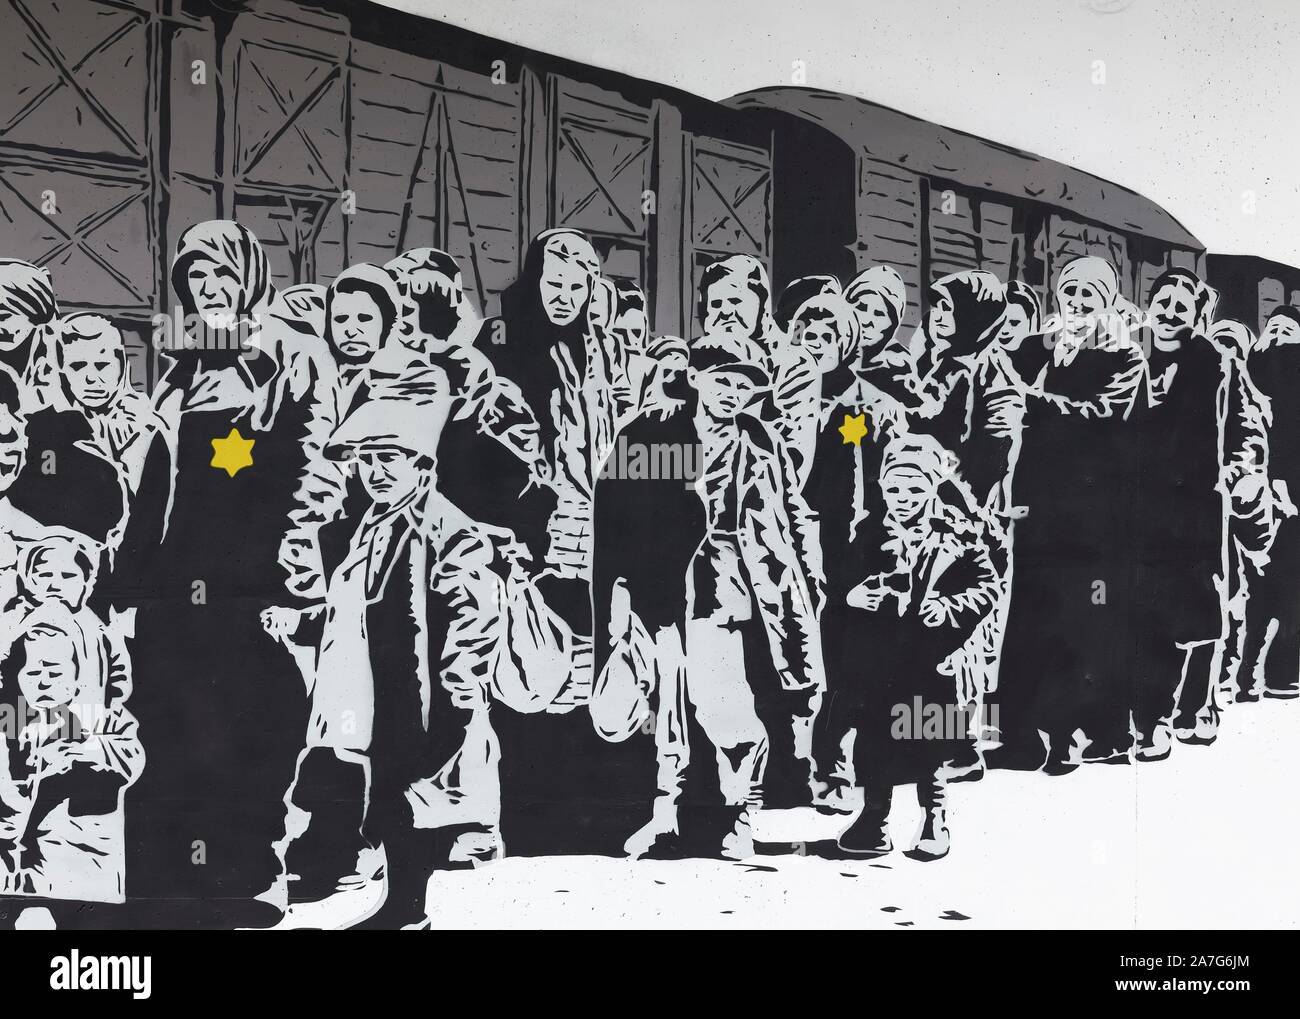 Colonna di ebrei con una stella ebraica nella parte anteriore di un carro merci, la deportazione, Olocausto, murale di artista di strada lacuna, 40 Grad Arte Urbana Festival 2019 Foto Stock